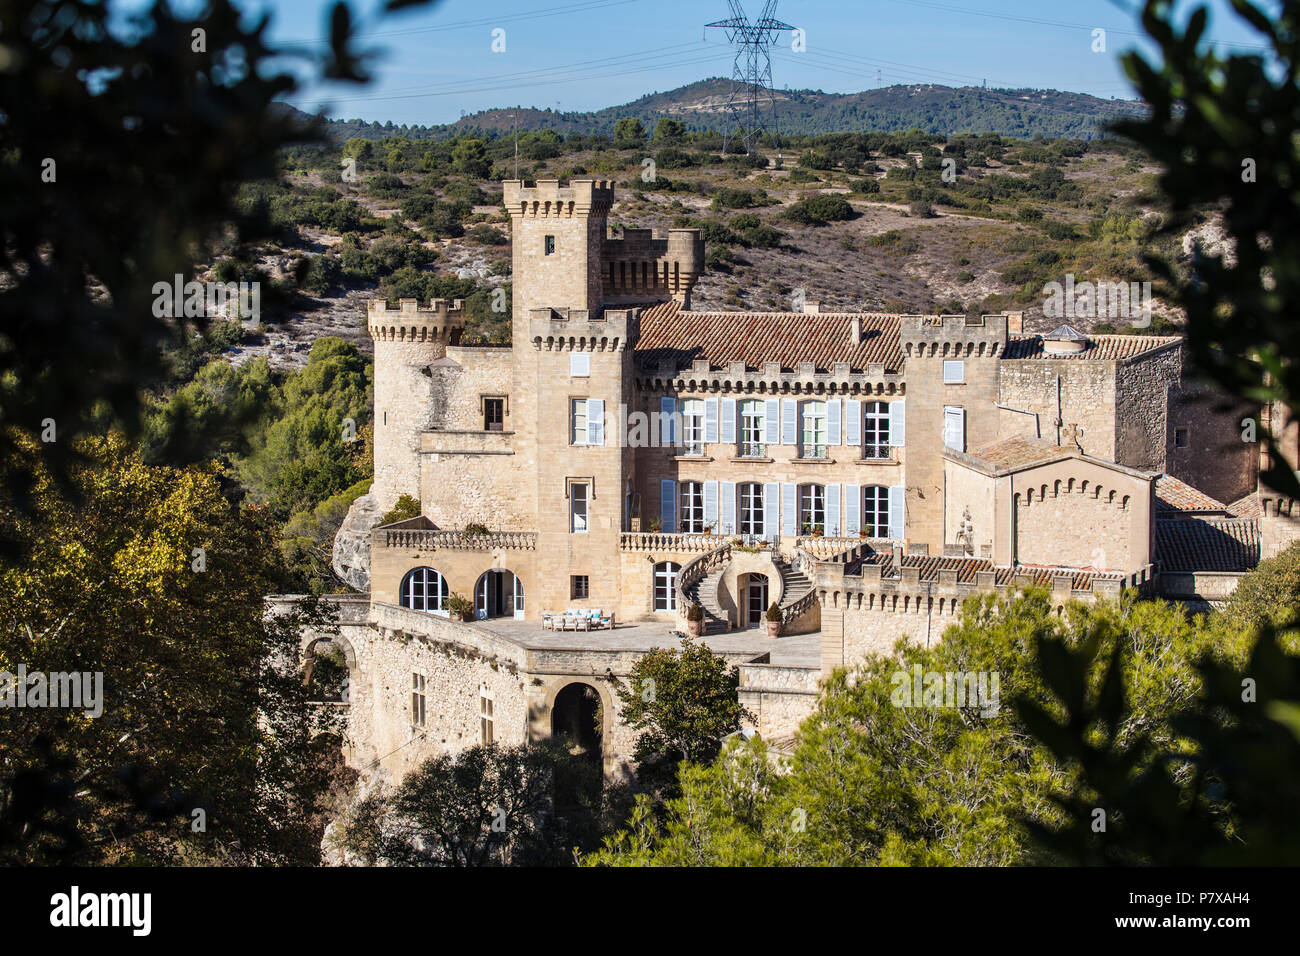 The castle of La Barben near Salon-de-Provence Stock Photo